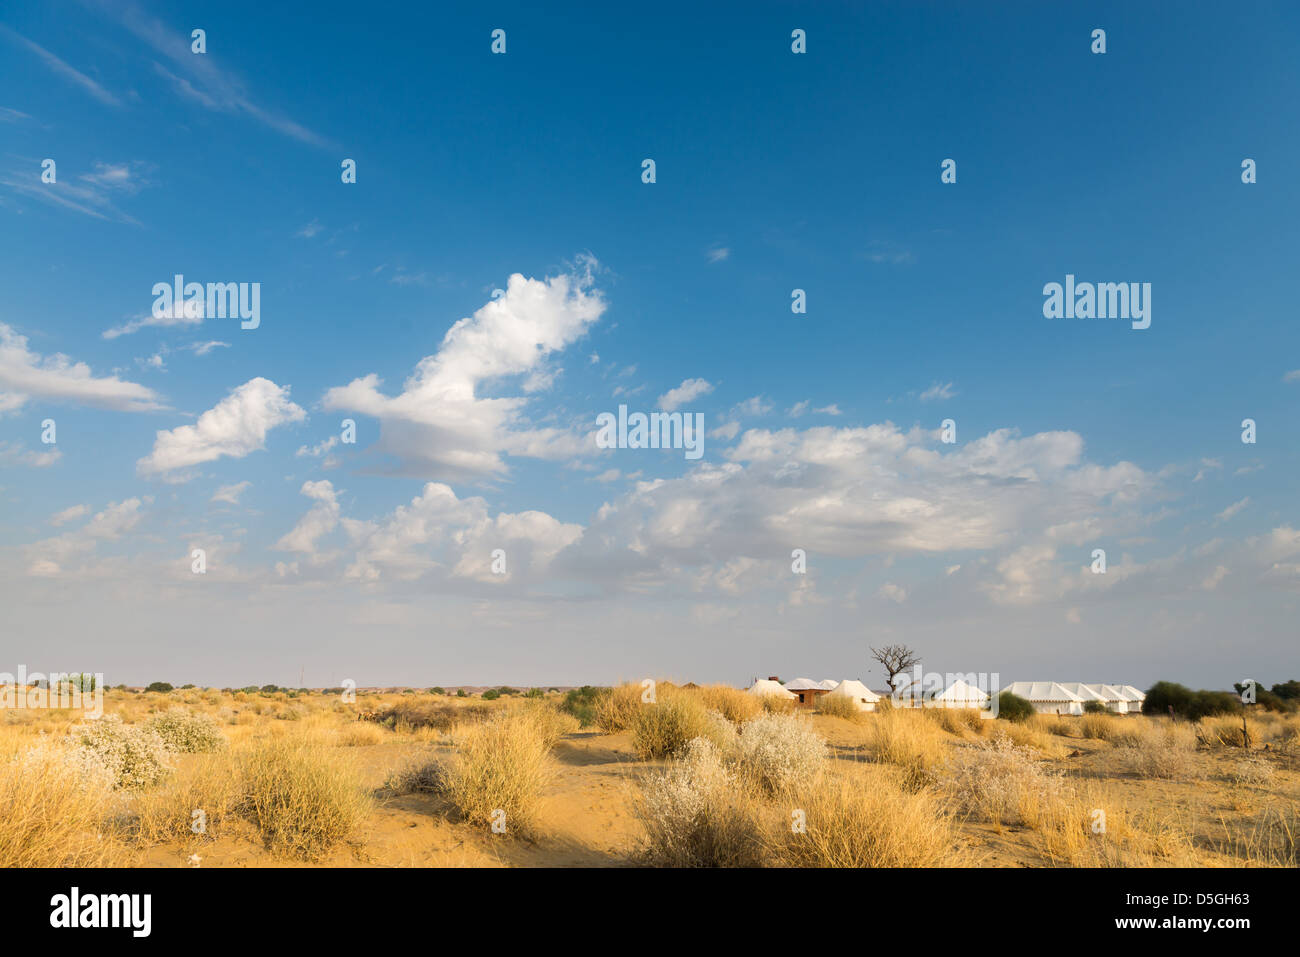 Tenda campeggio hotel per turisti nel deserto di Thar sotto il cielo blu Foto Stock